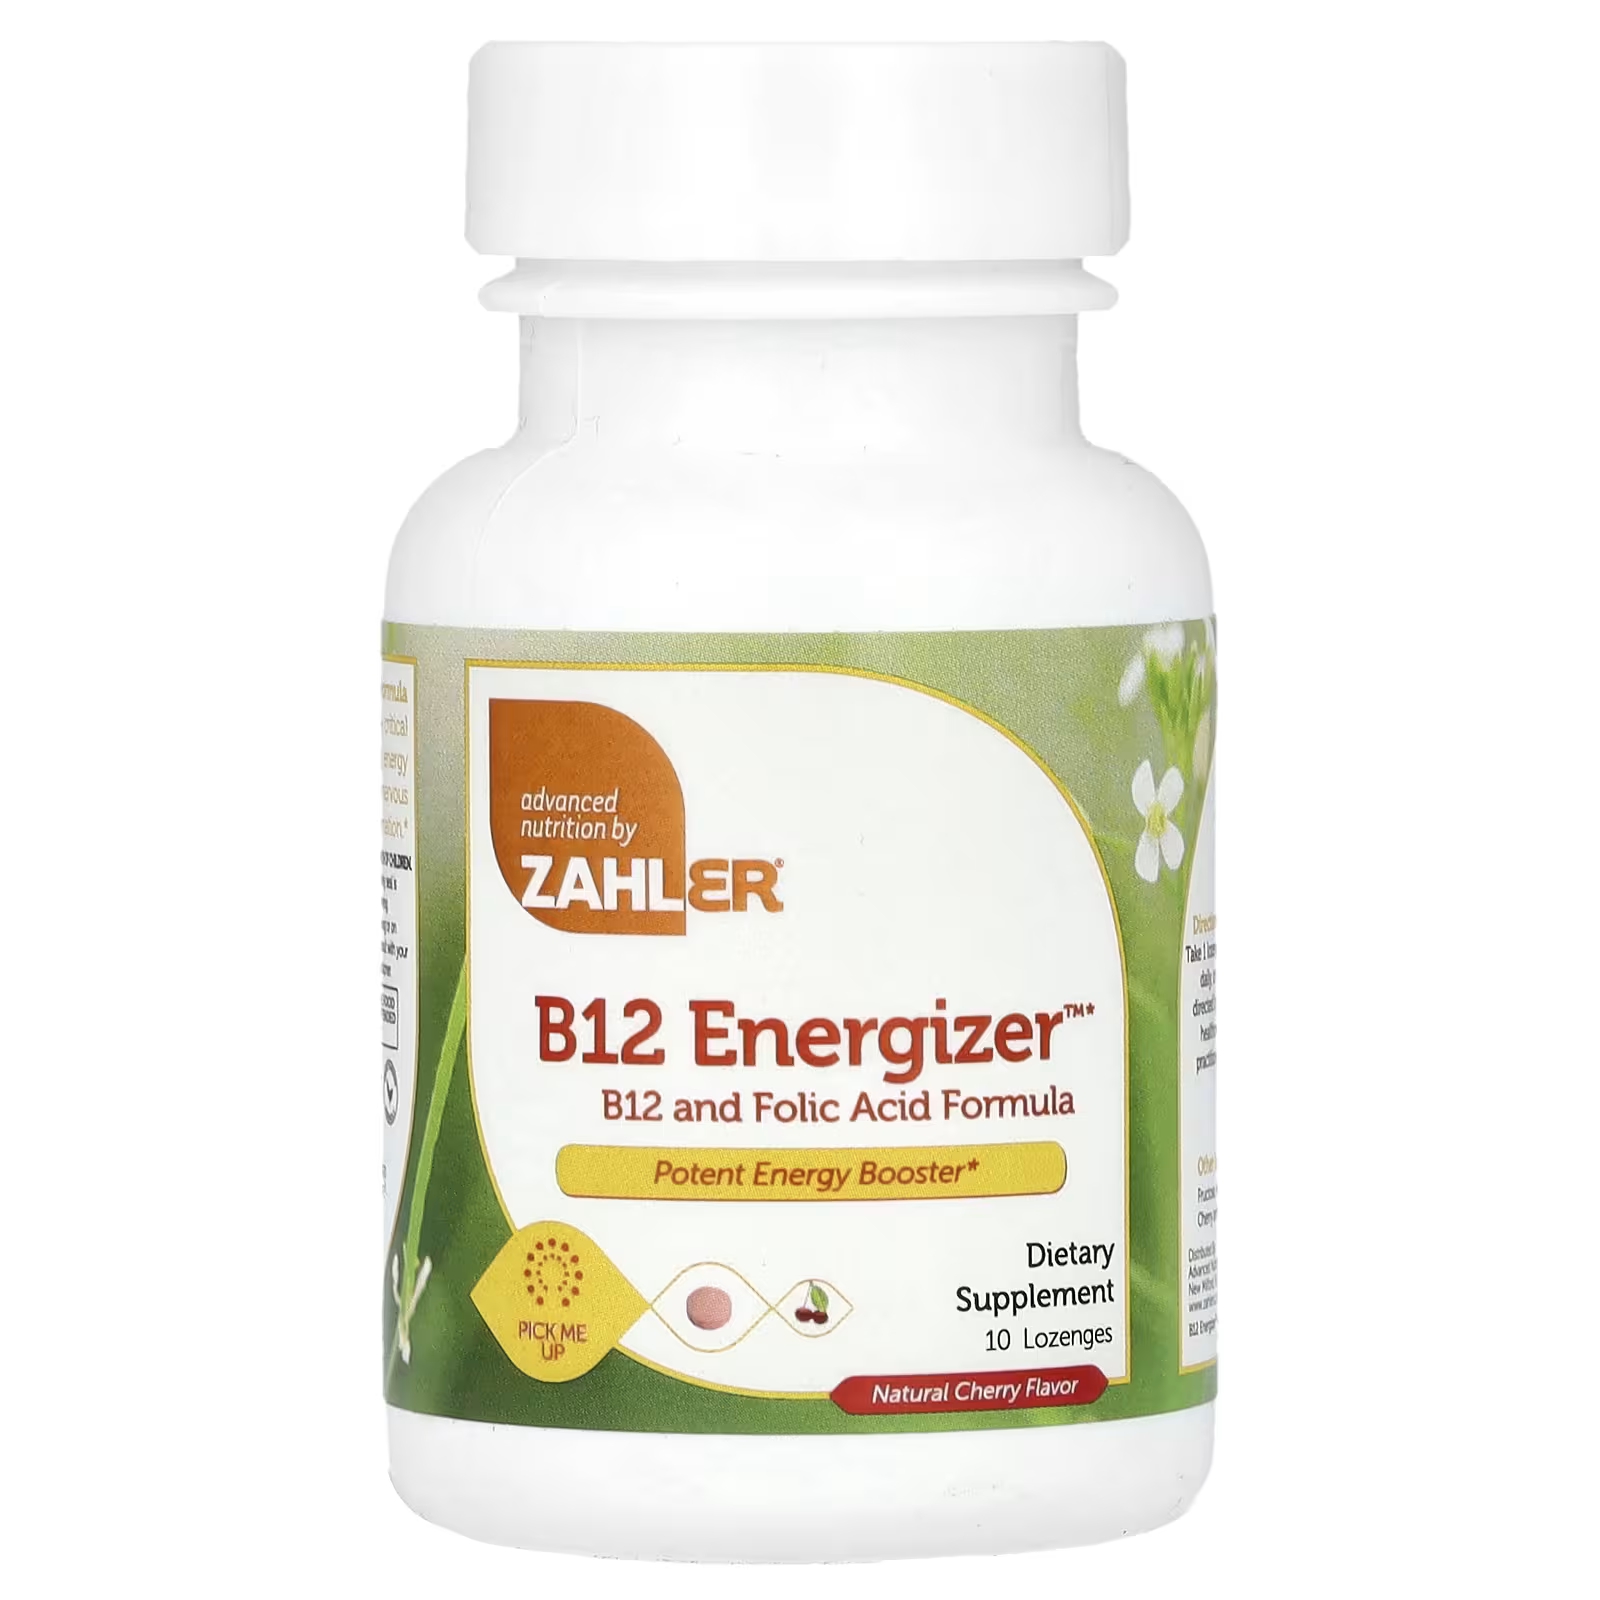 Пищевая добавка Zahler B12 Energizer натуральная вишня, 10 пастилок пищевая добавка zahler b12 energizer b12 и формула фолиевой кислоты с натуральной вишней 360 пастилок